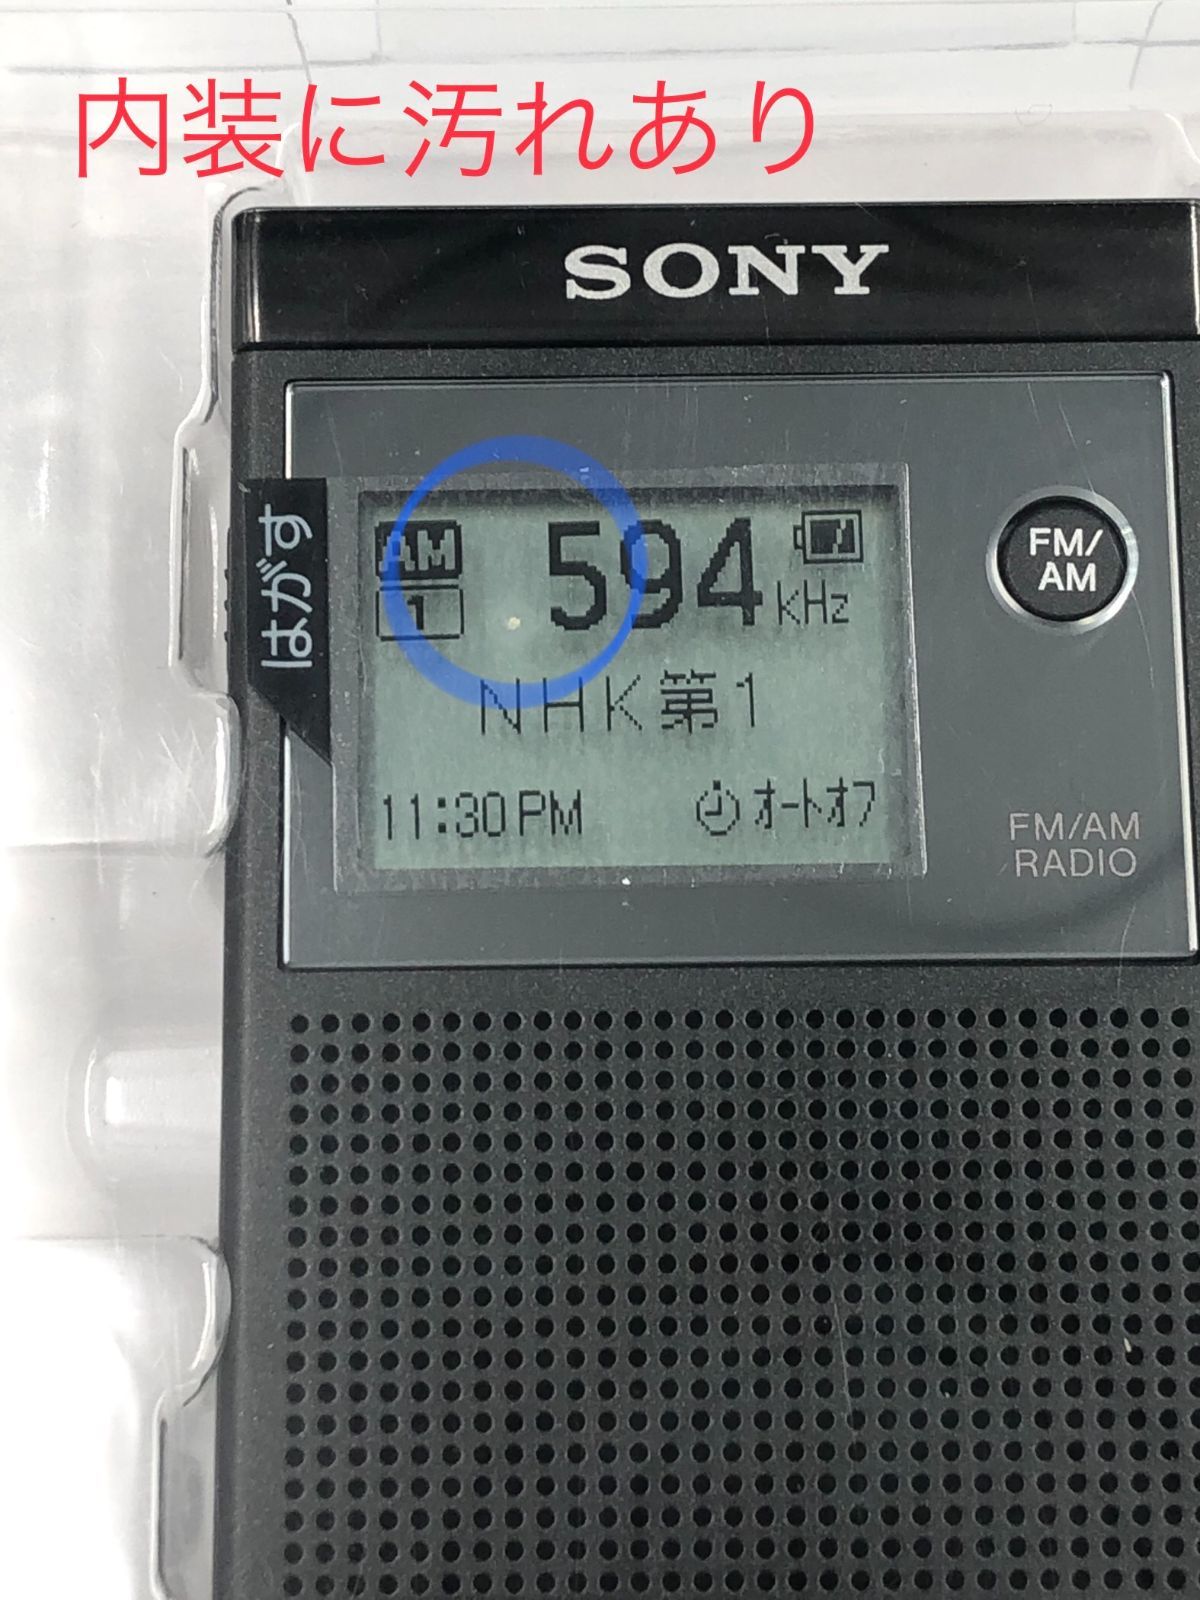 SONY SRF-R356 携帯ラジオ - ラジオ